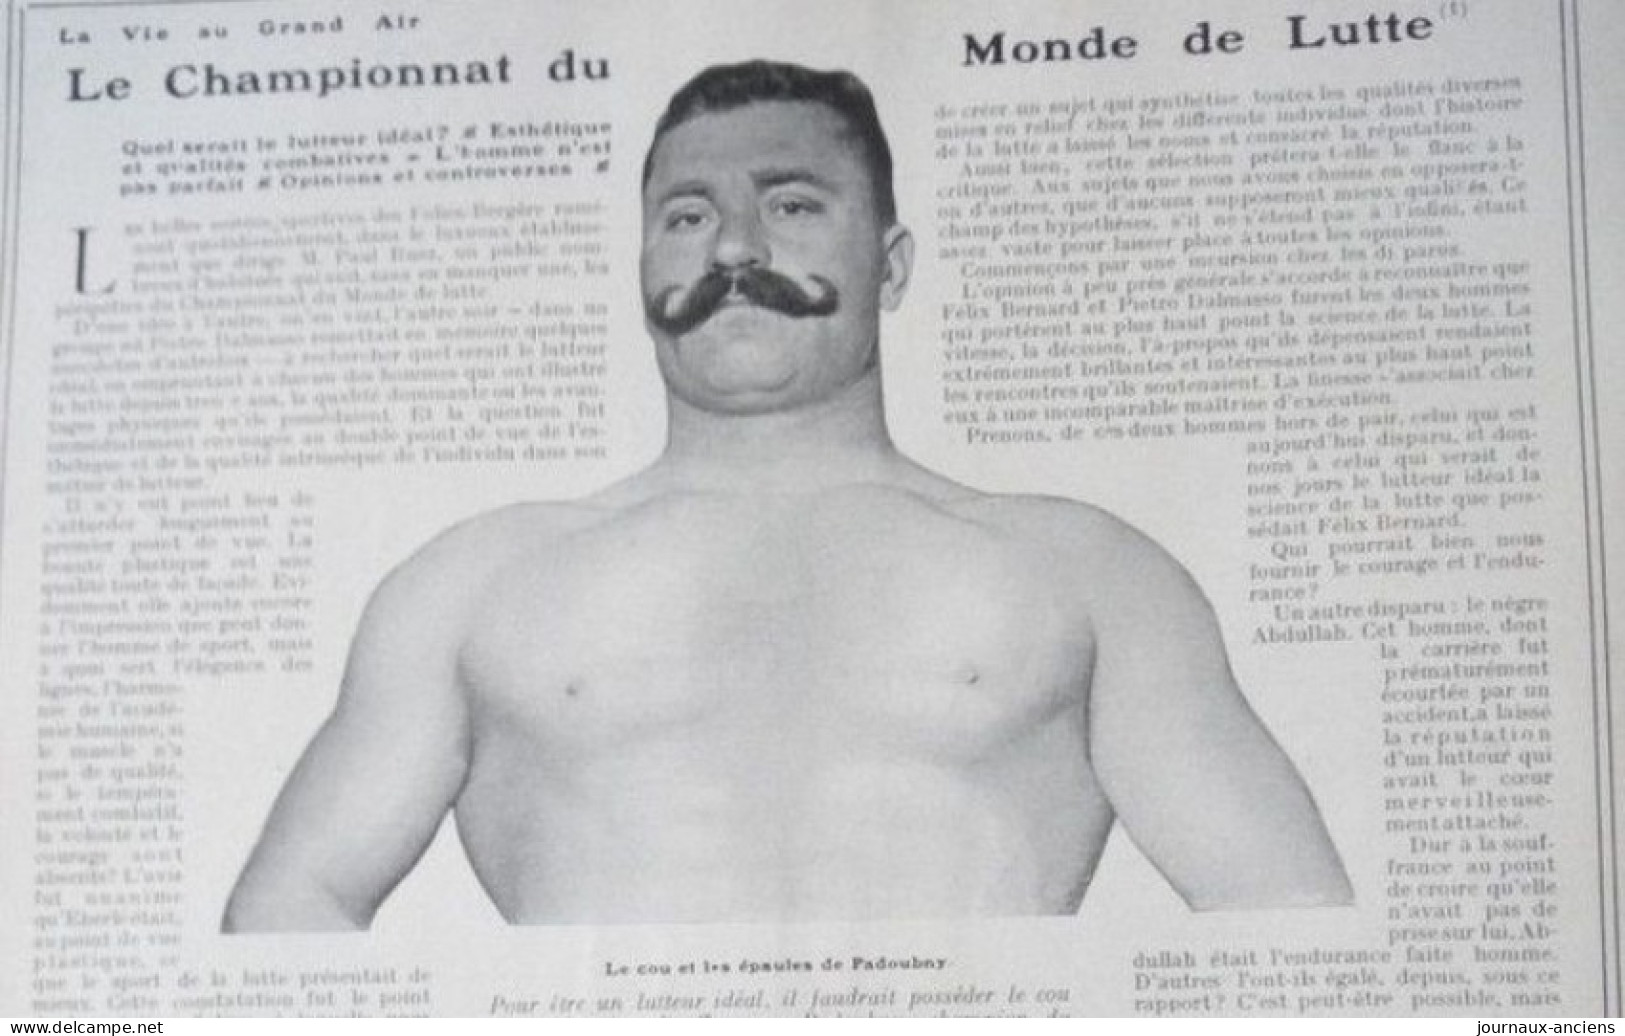 1906 LE CHAMPIONNAT DU MONDE DE LUTTE - PADOUBNY - ANTONITCH - LA VIE AU GRAND AIR - Libros